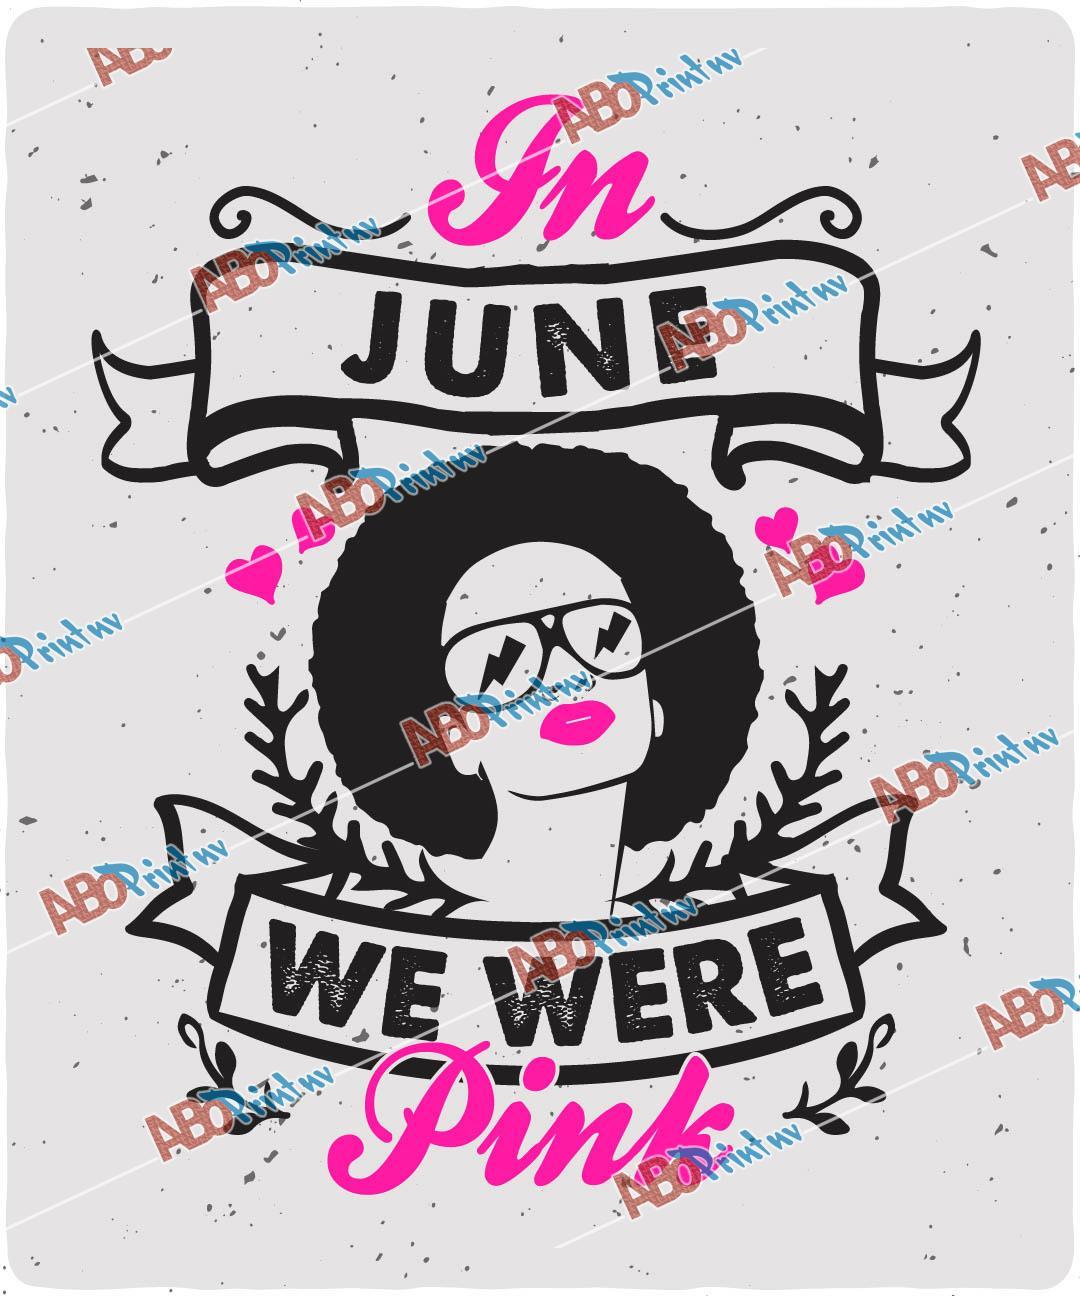 In June we were pink.jpg